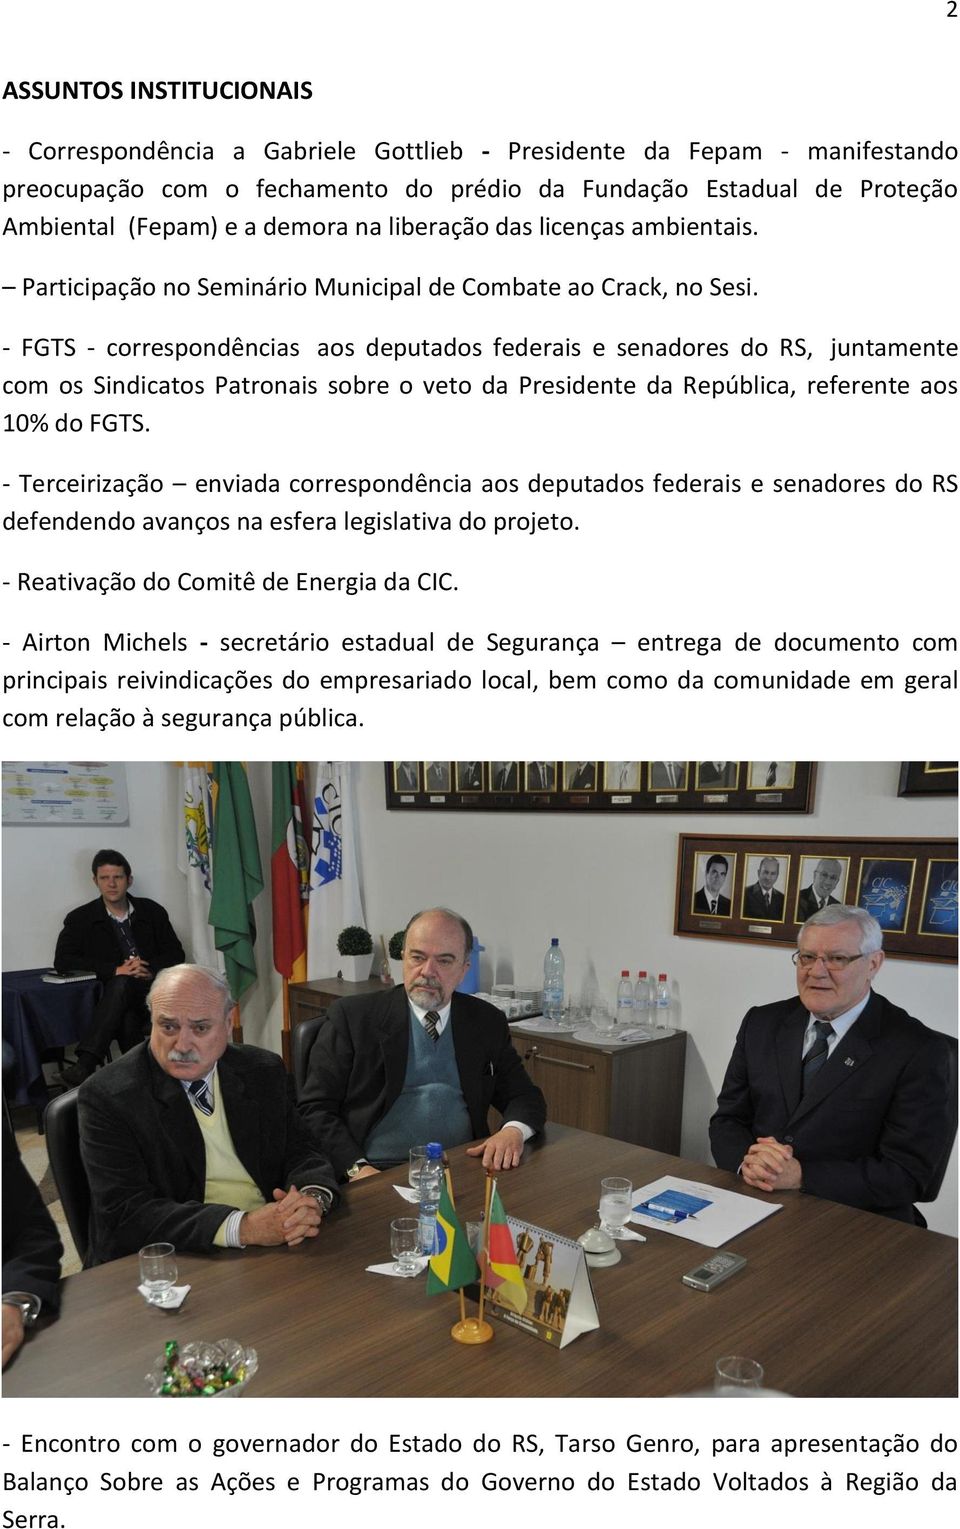 - FGTS - correspondências aos deputados federais e senadores do RS, juntamente com os Sindicatos Patronais sobre o veto da Presidente da República, referente aos 10% do FGTS.